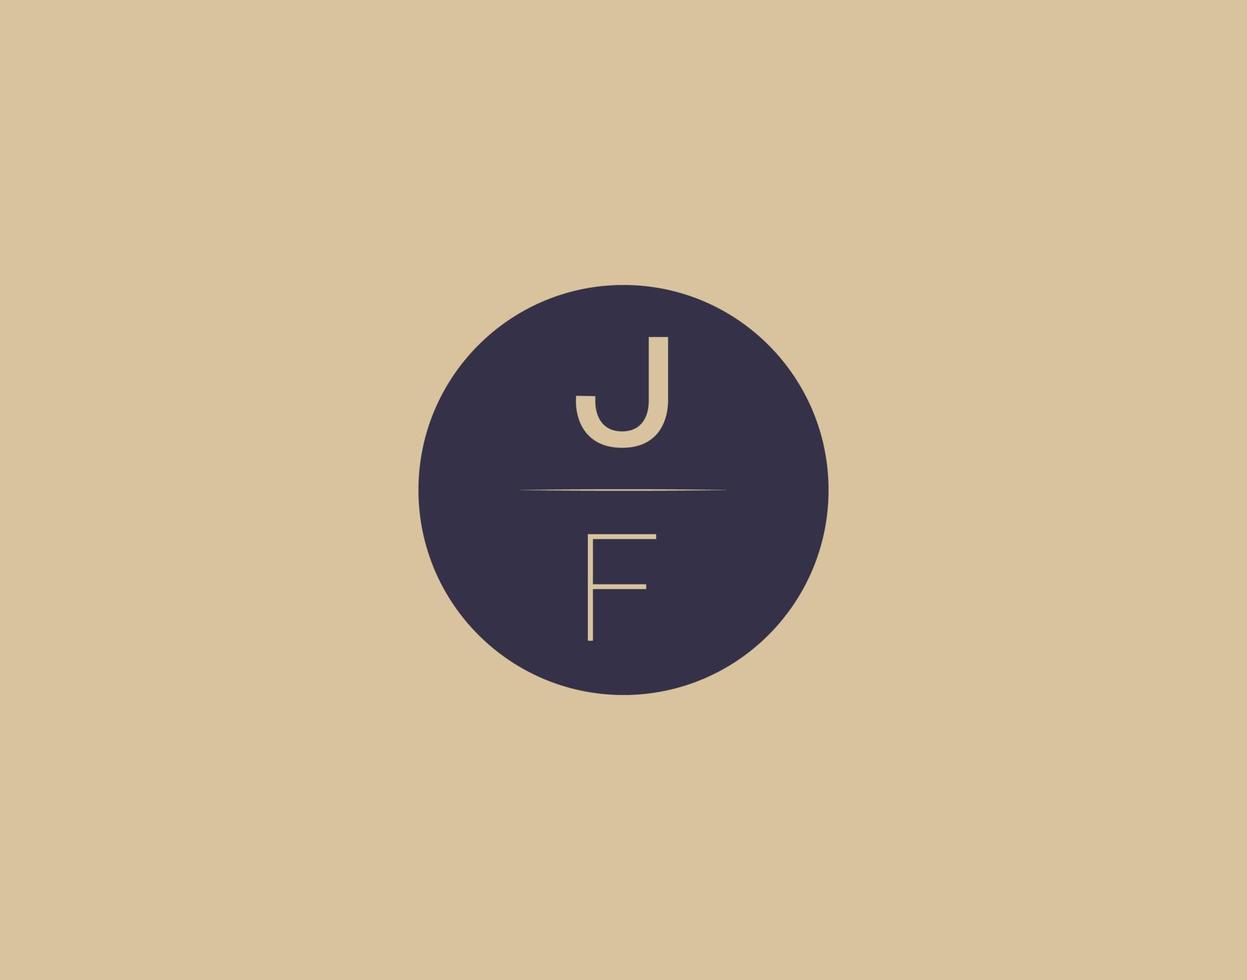 imagens vetoriais de design de logotipo moderno e elegante da carta jf vetor